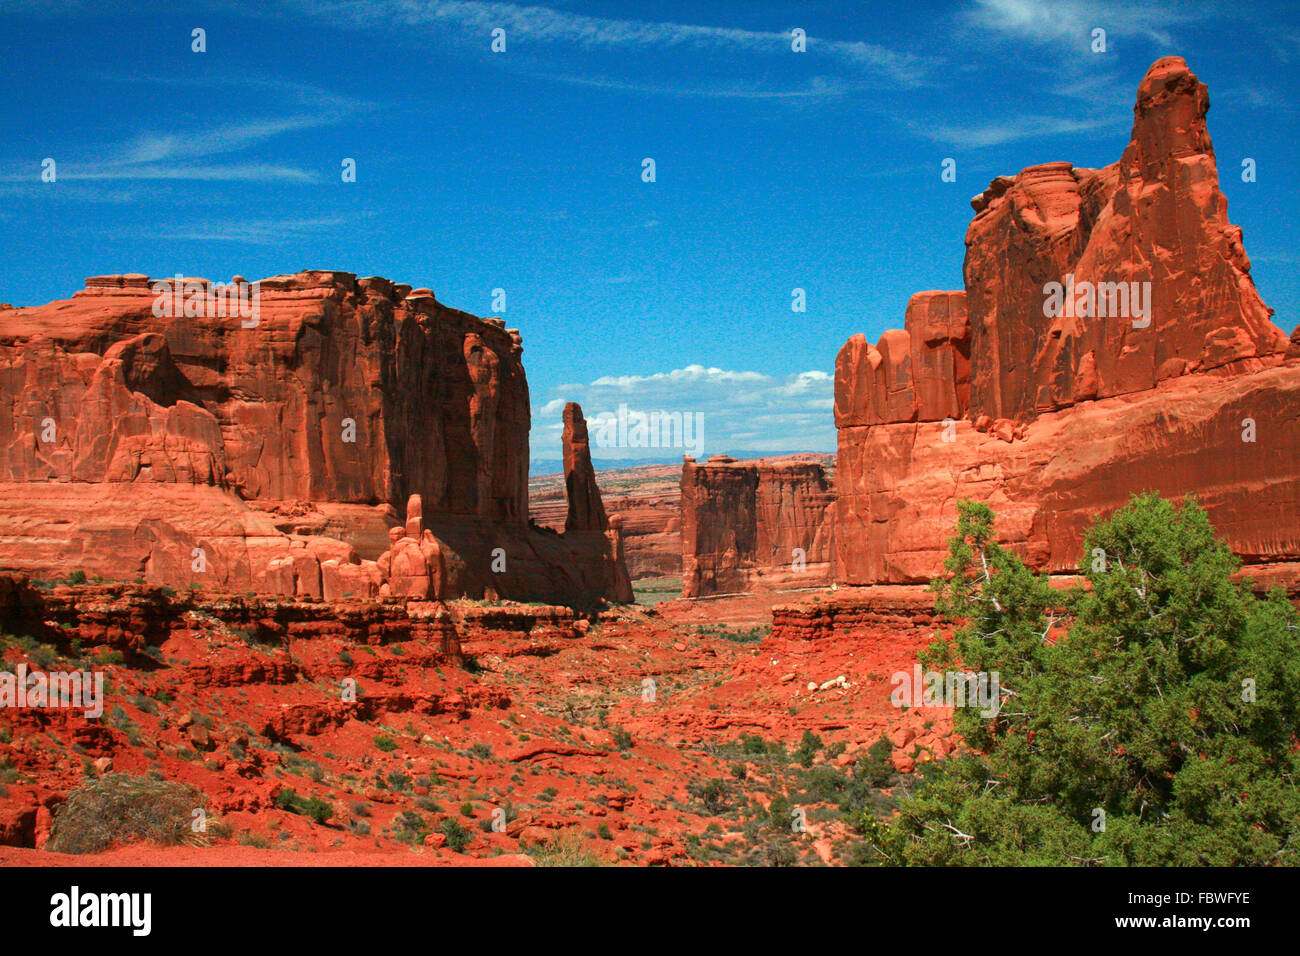 Park Avenue est sculptée dans des formations de roche rouge Entrada Sandstone dans Arches National Park Moab Utah, USA. Banque D'Images